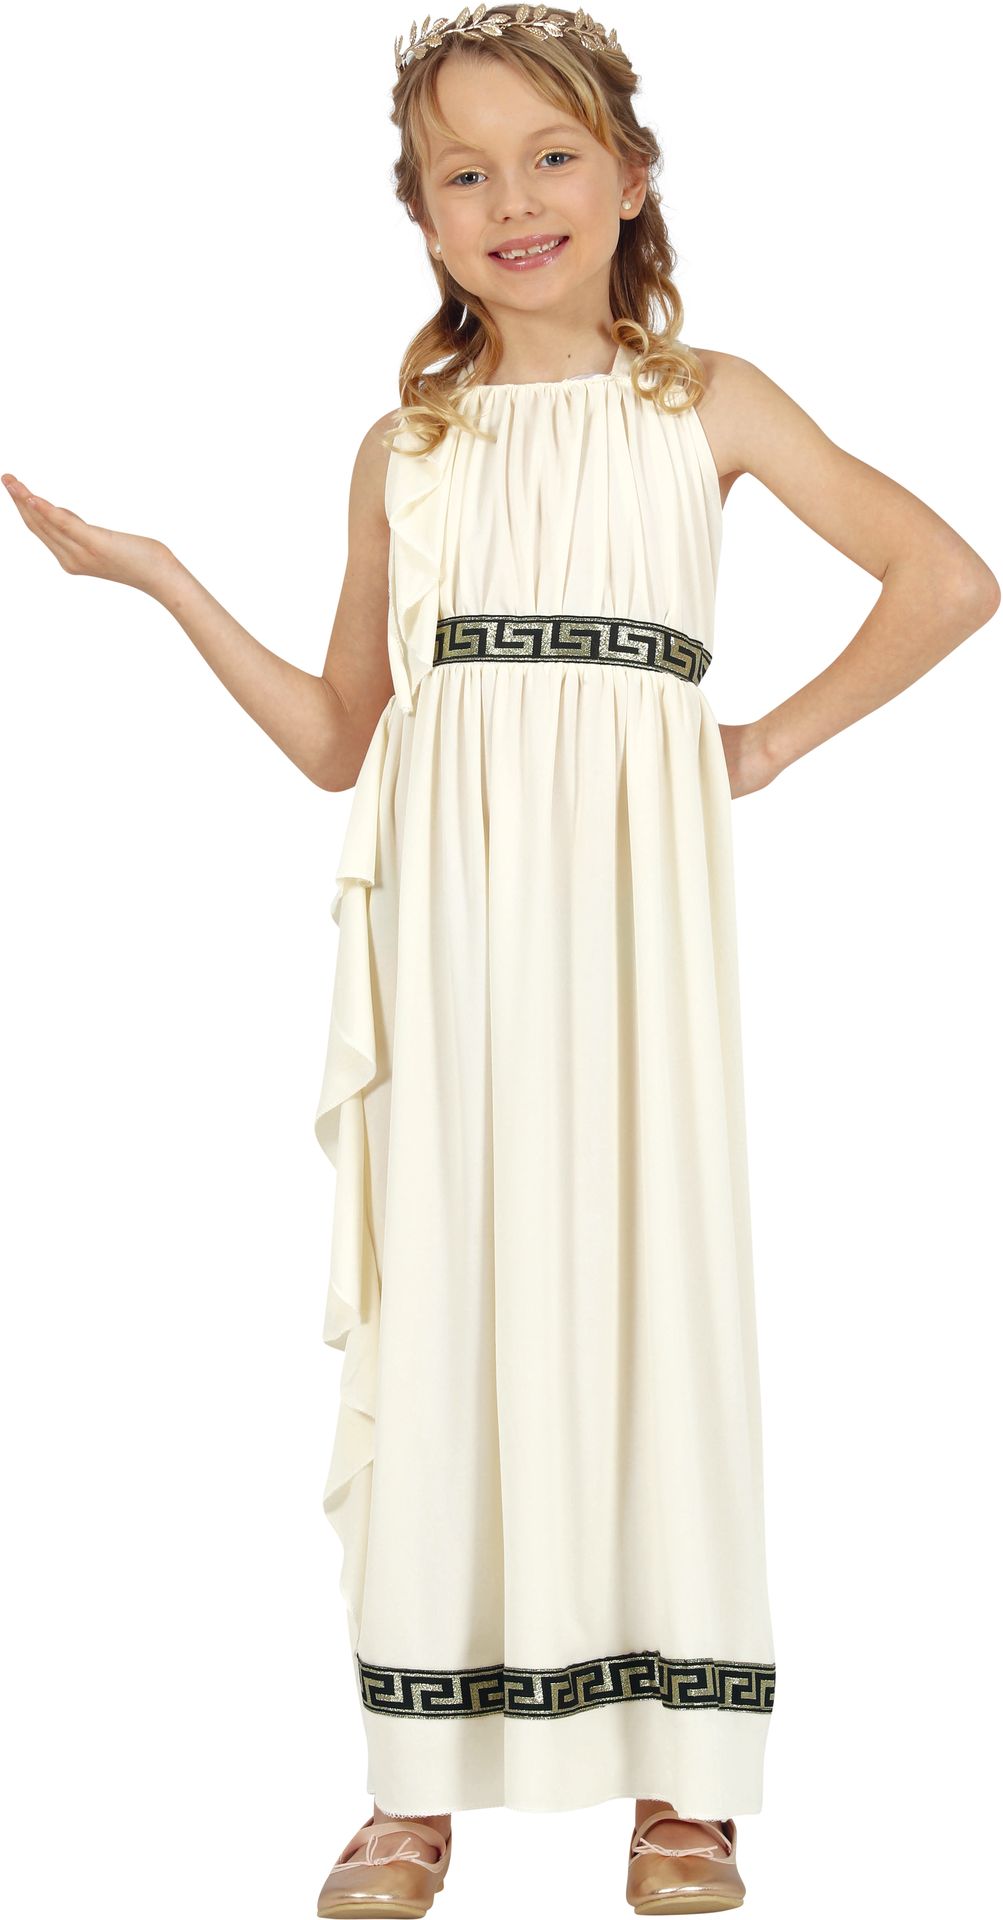 Romeinse keizerin jurk meisje